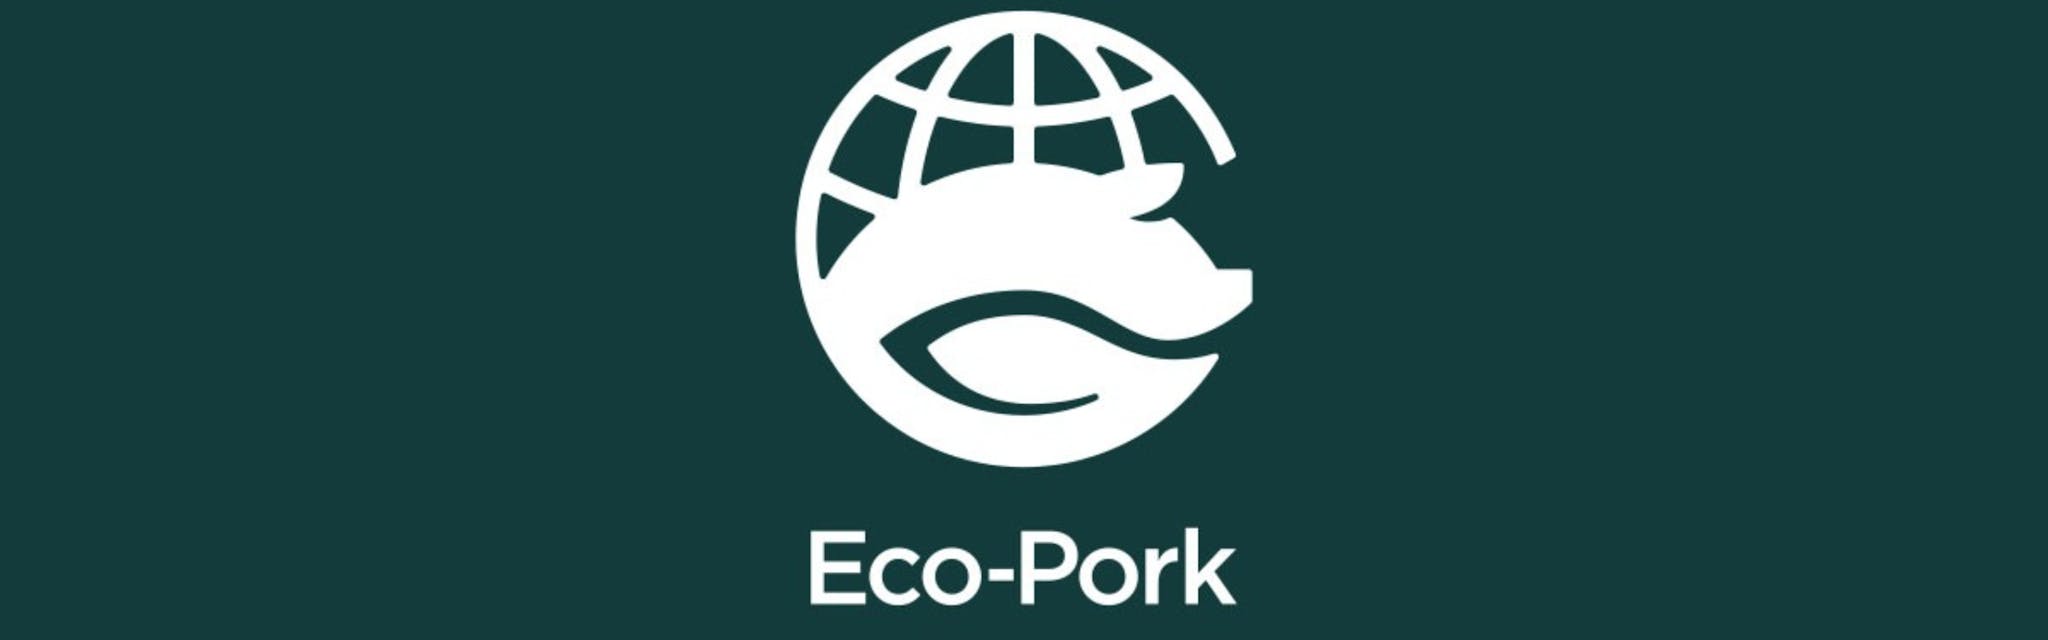 株式会社Eco-Pork - カバー画像